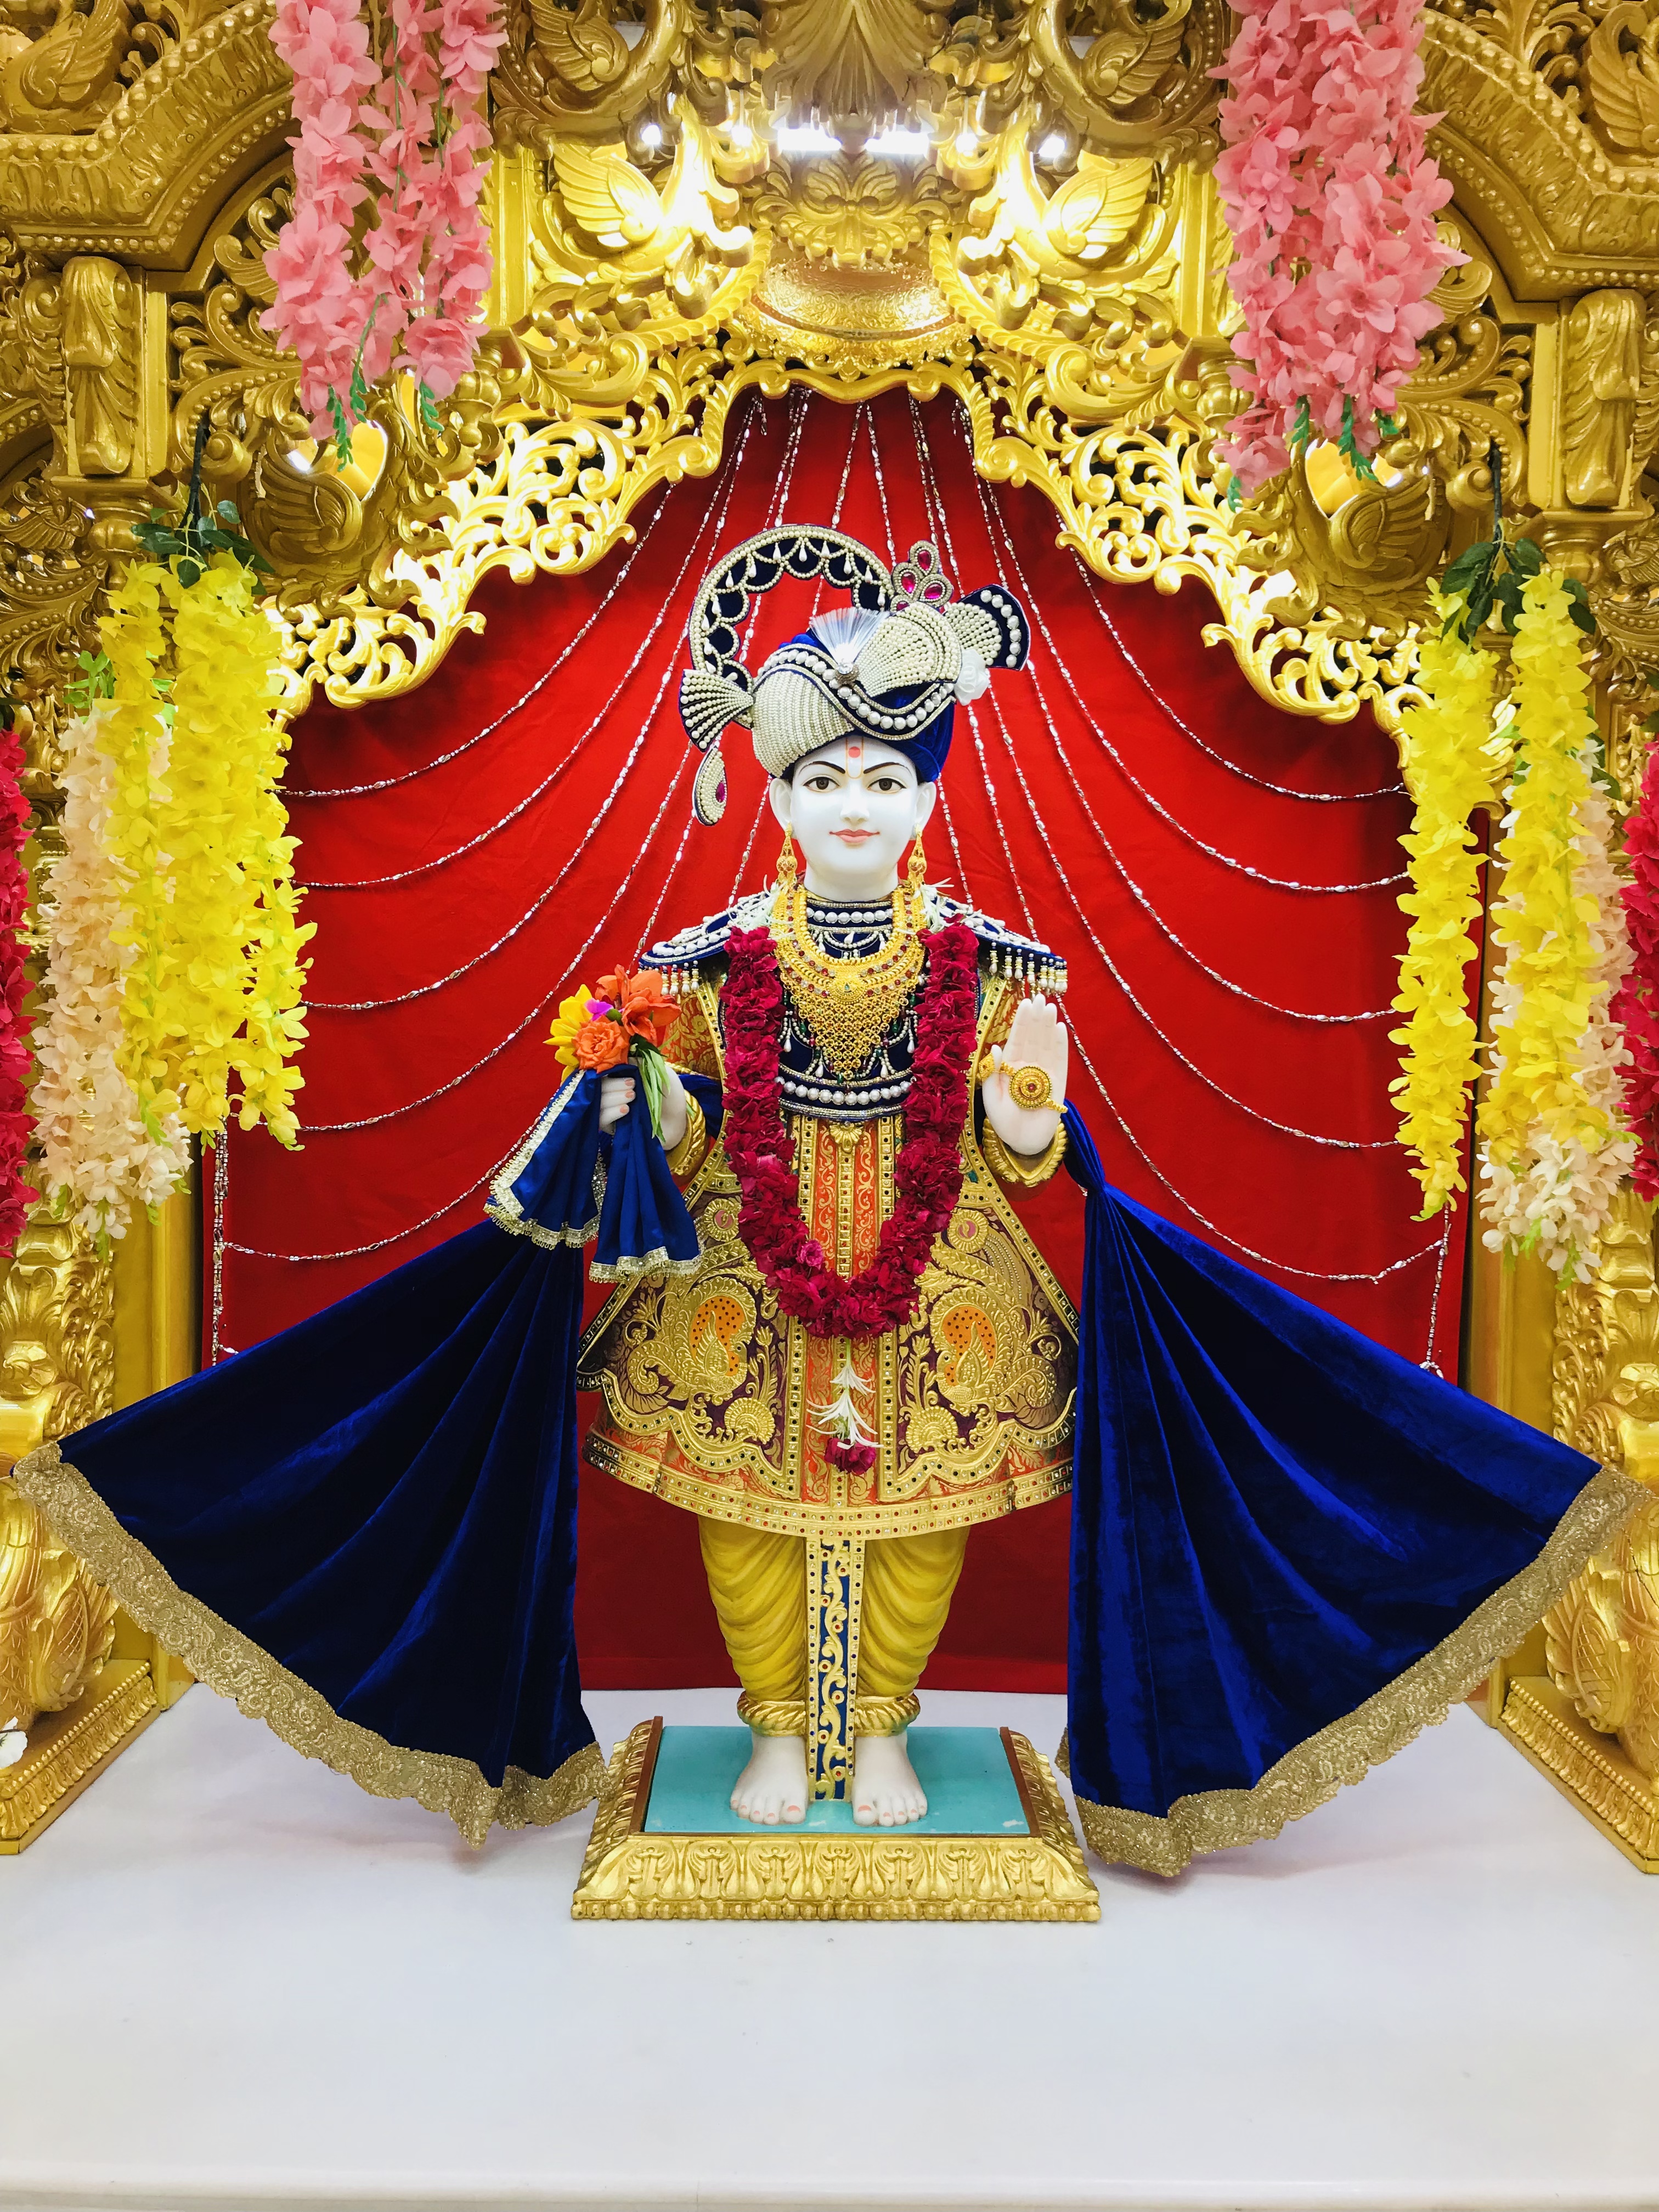 SMVS Swaminarayan Mandir - Vijapur